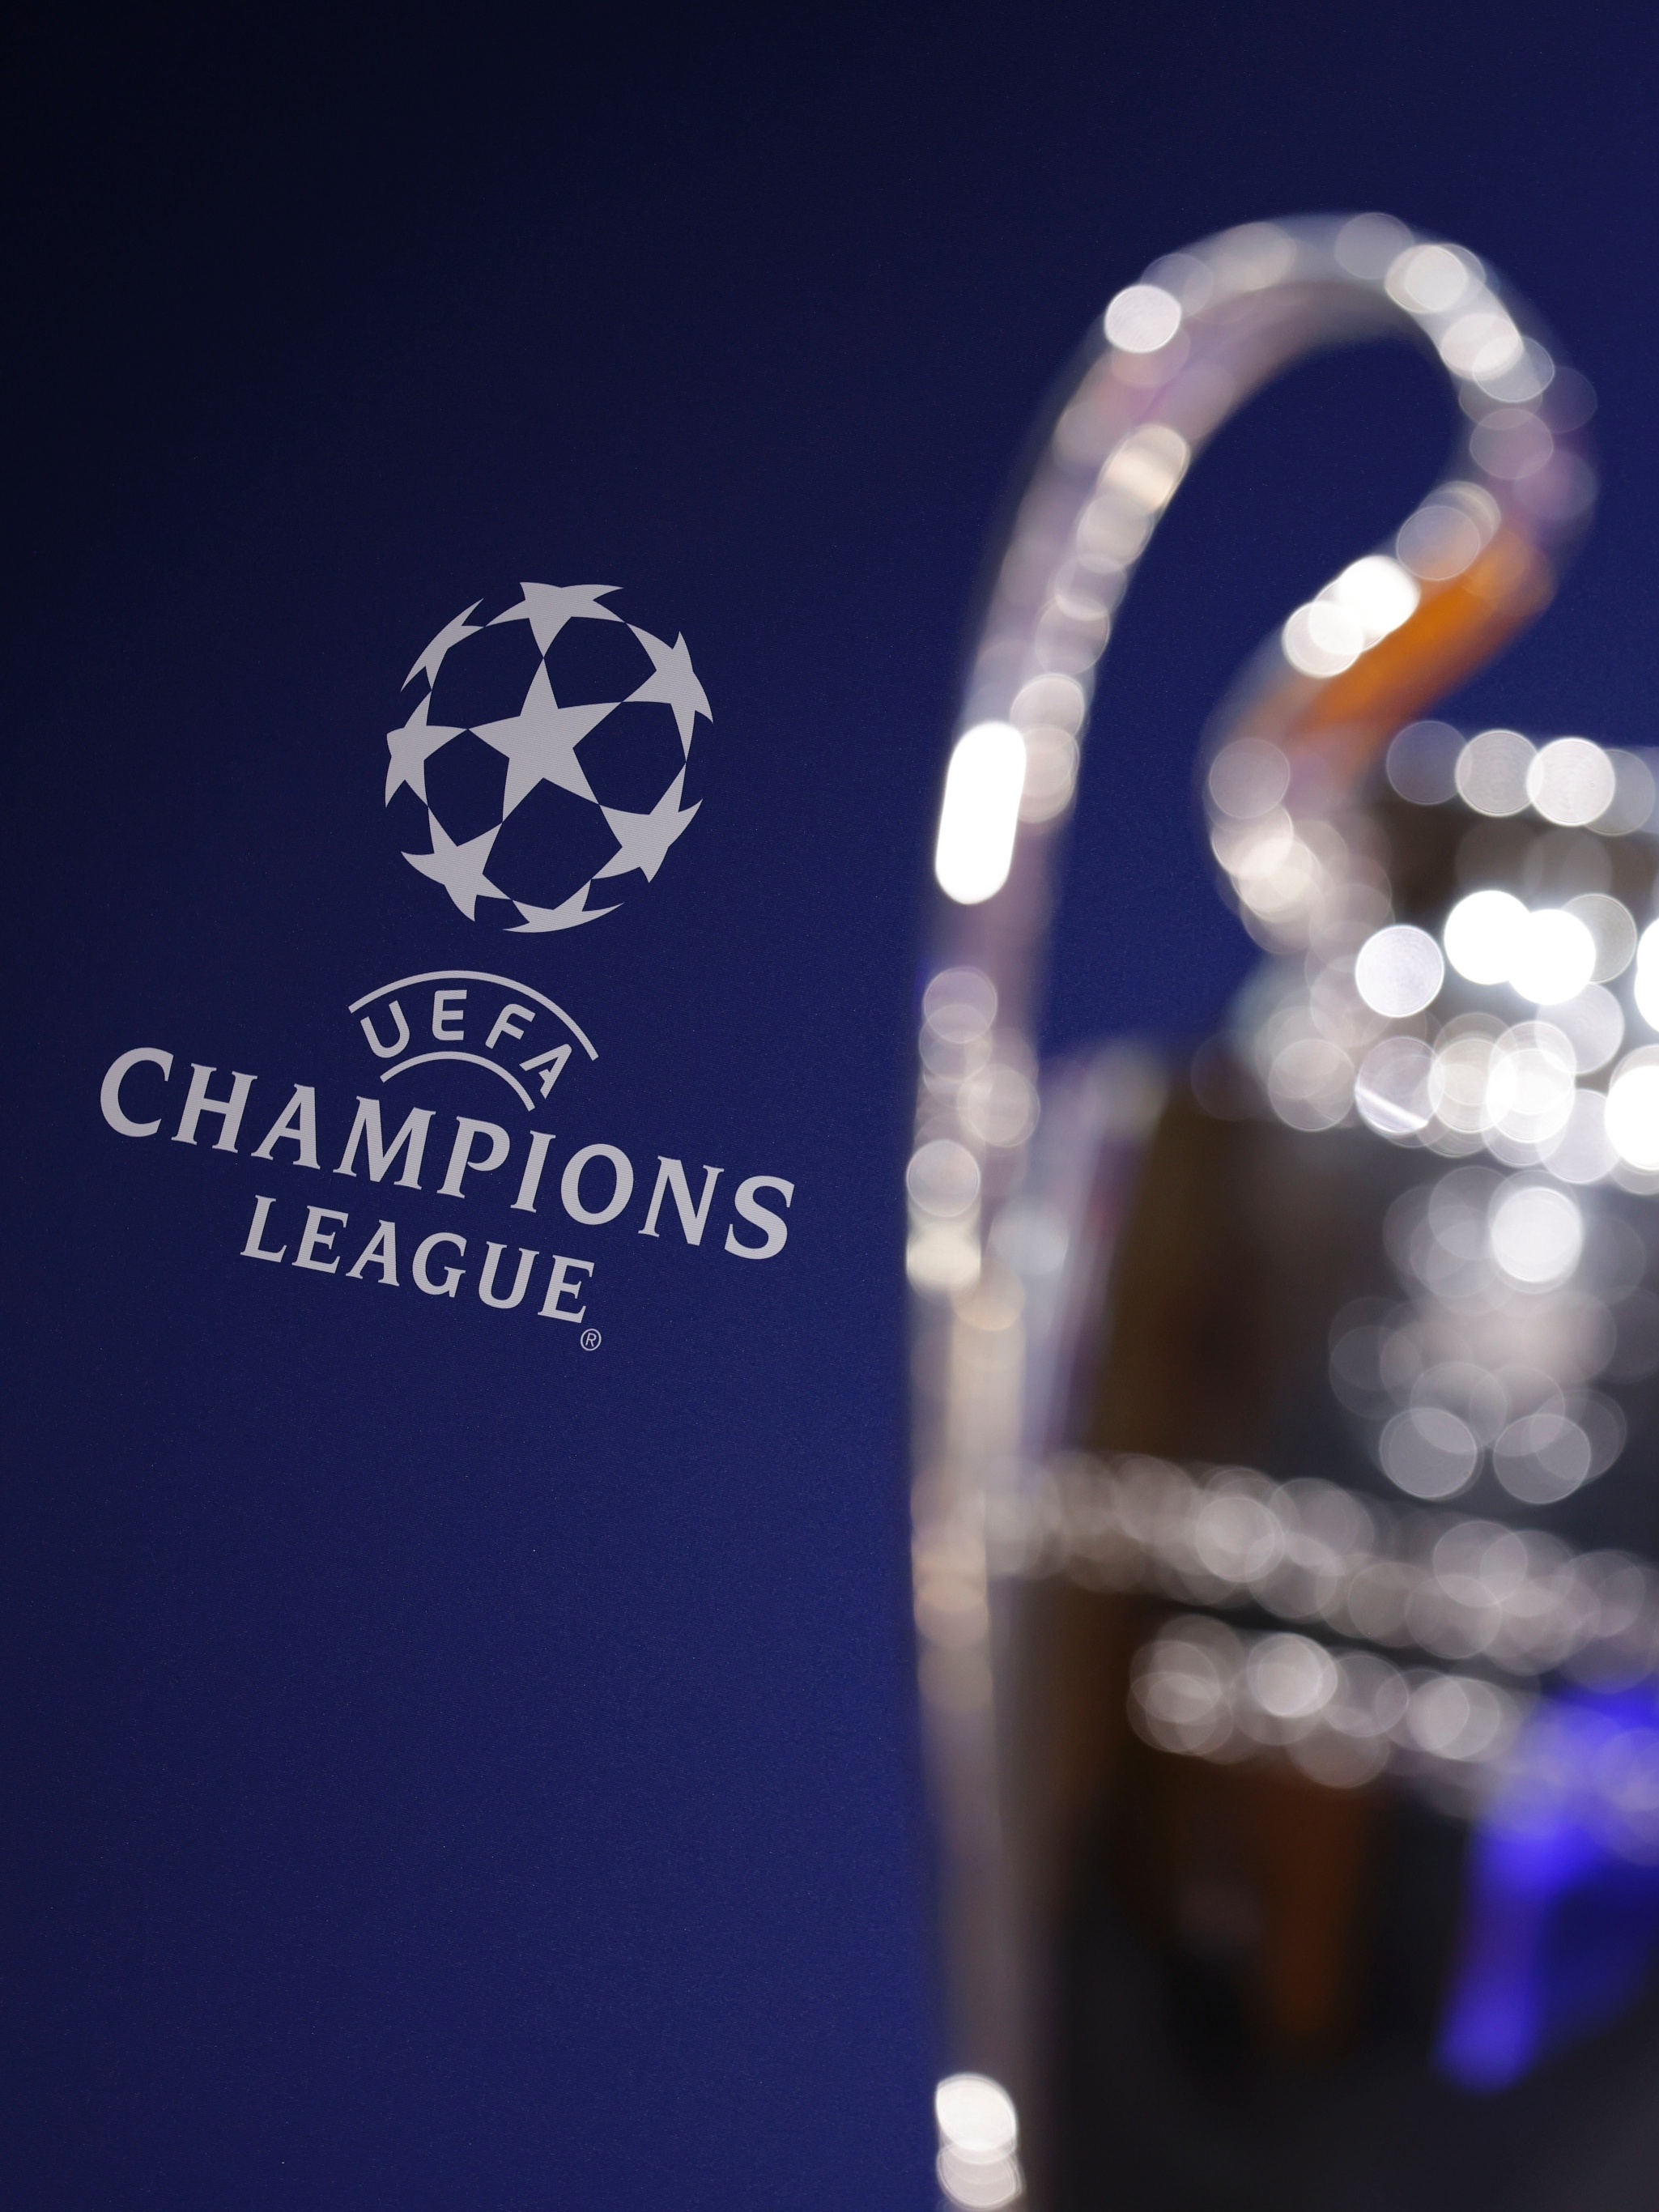 Conheça os grupos da Champions League 2021/22 - 26/08/2021